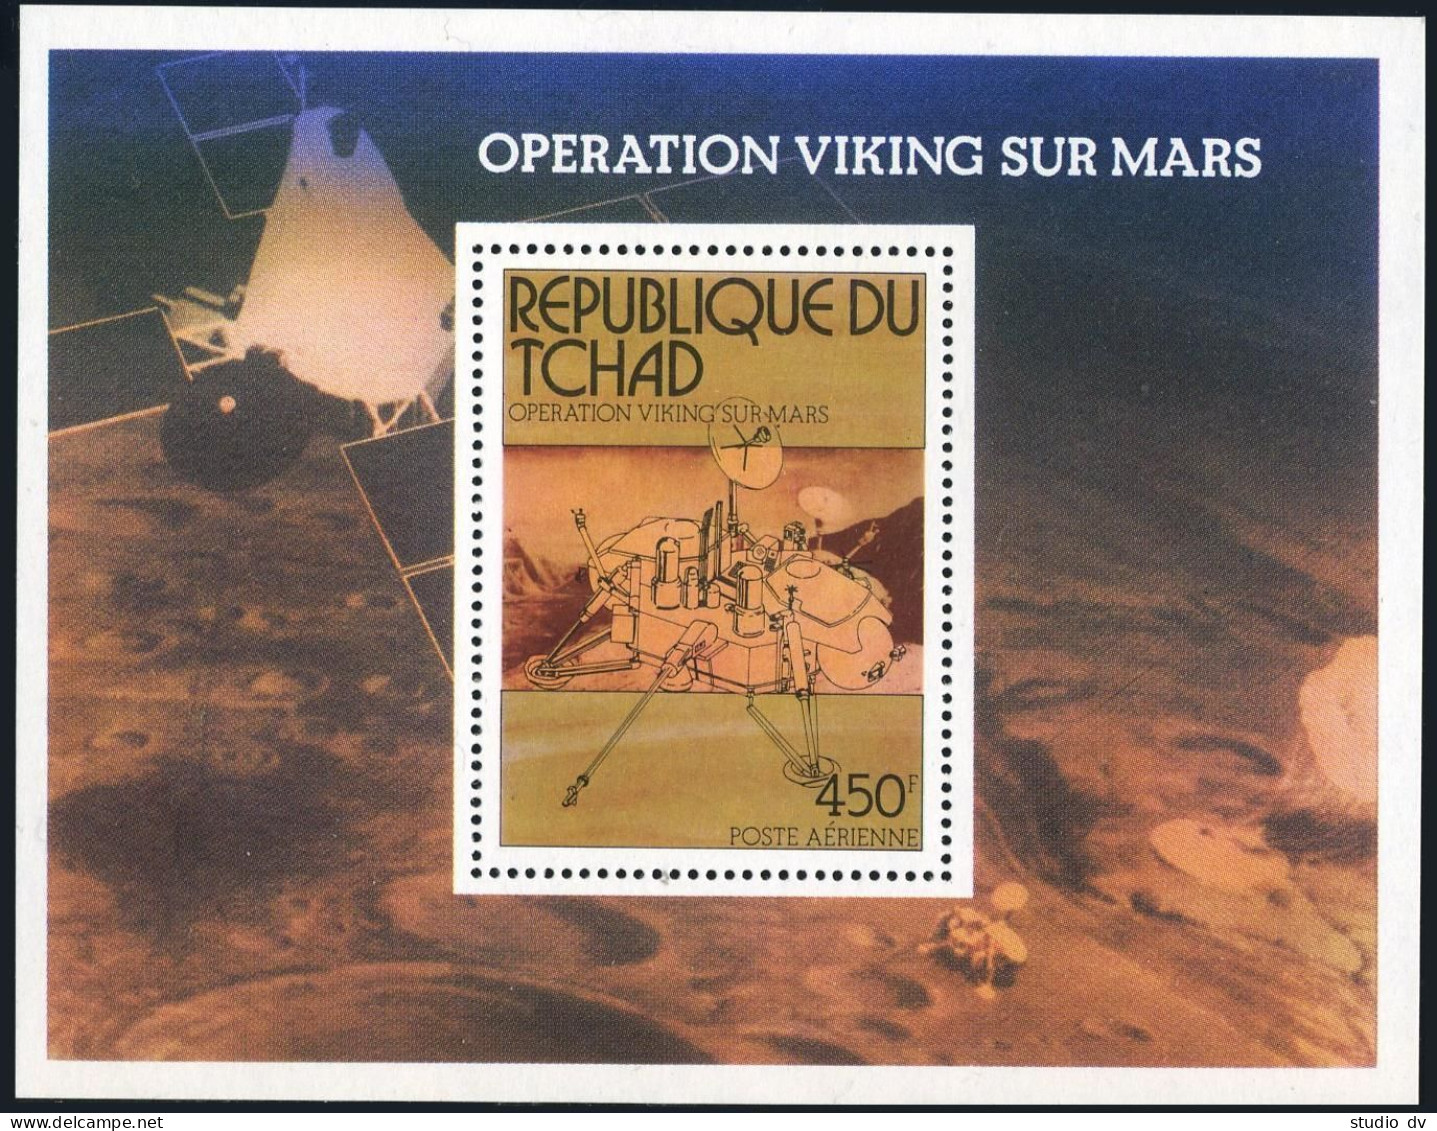 Chad C194,MNH.Michel 752 Bl.66. Viking Mars Project,1976. - Tchad (1960-...)